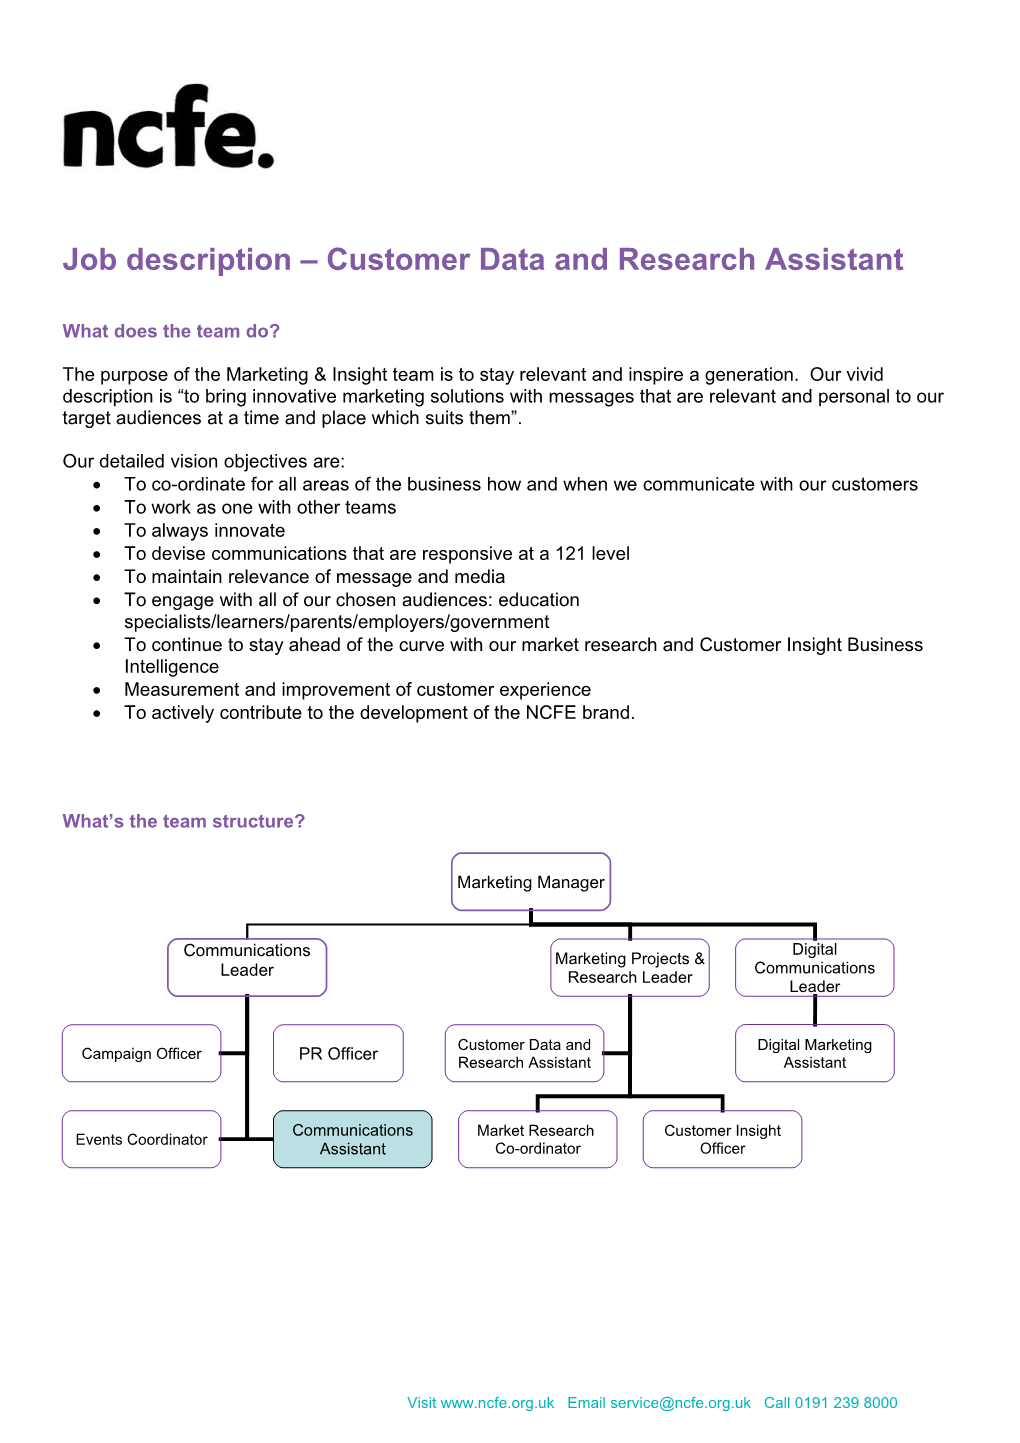 Job Description Centre Support Assistant